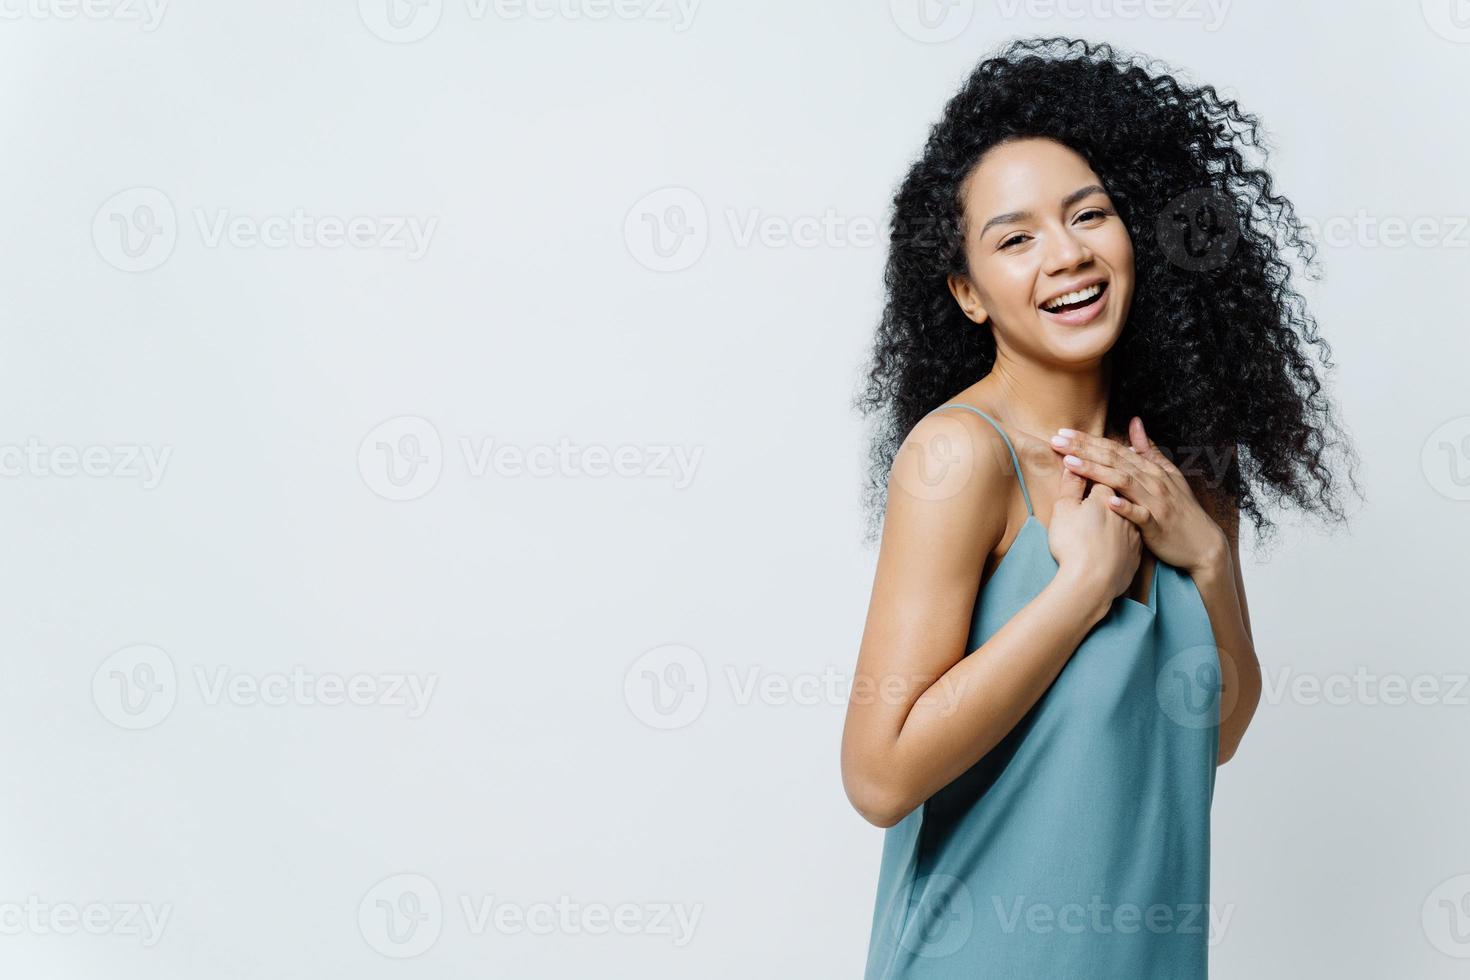 überglückliche afroamerikanerin lacht positiv, hält hände auf brust, hört urkomischen witz, drückt glück aus, trägt lässige kleidung, posiert im studio vor weißem hintergrund, kichert positiv foto